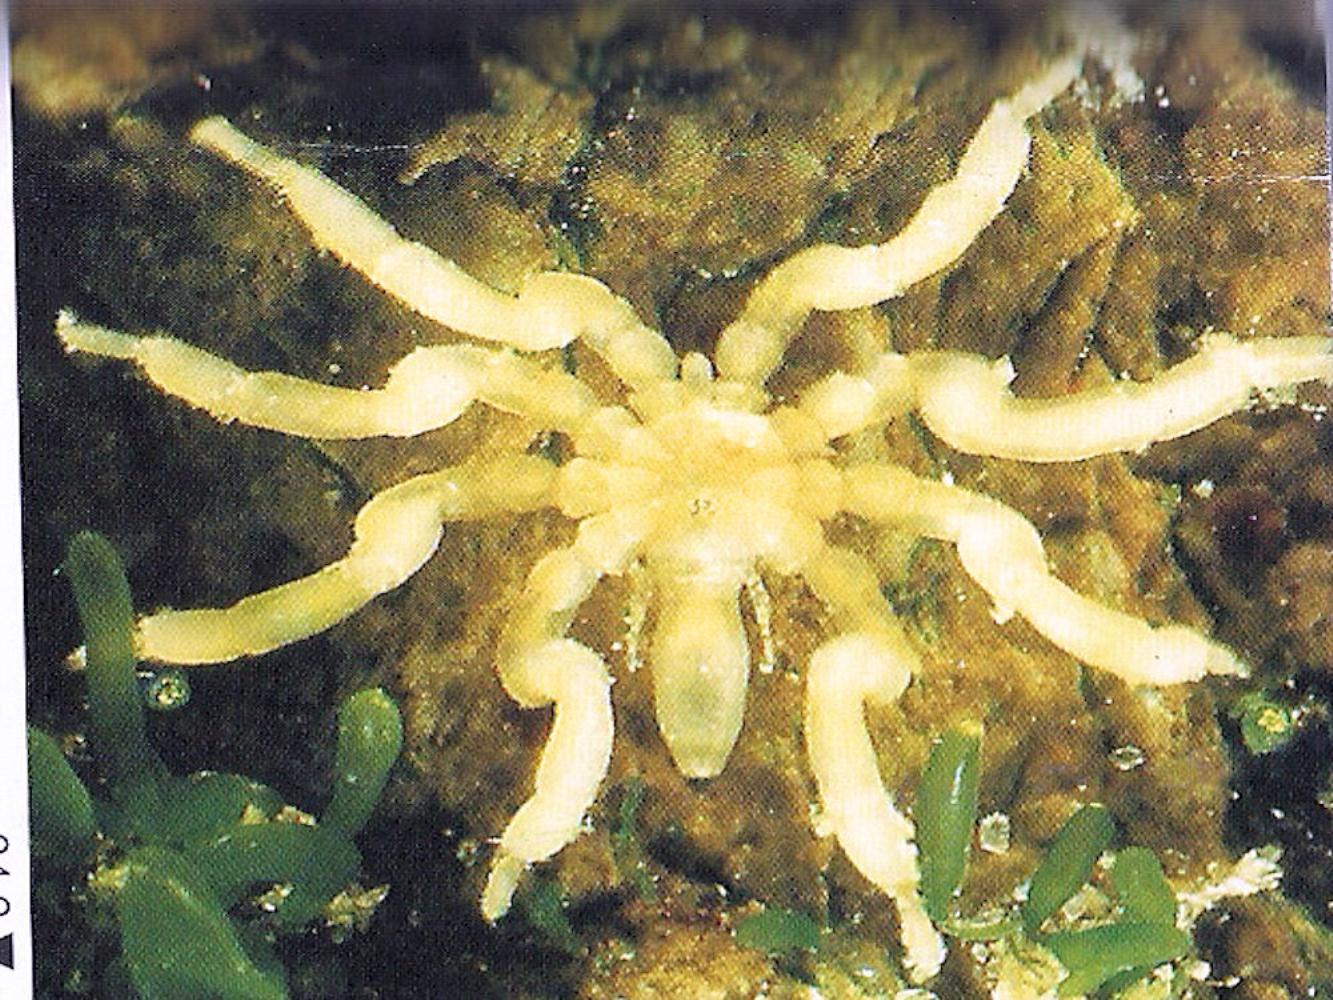 Compact sea spider